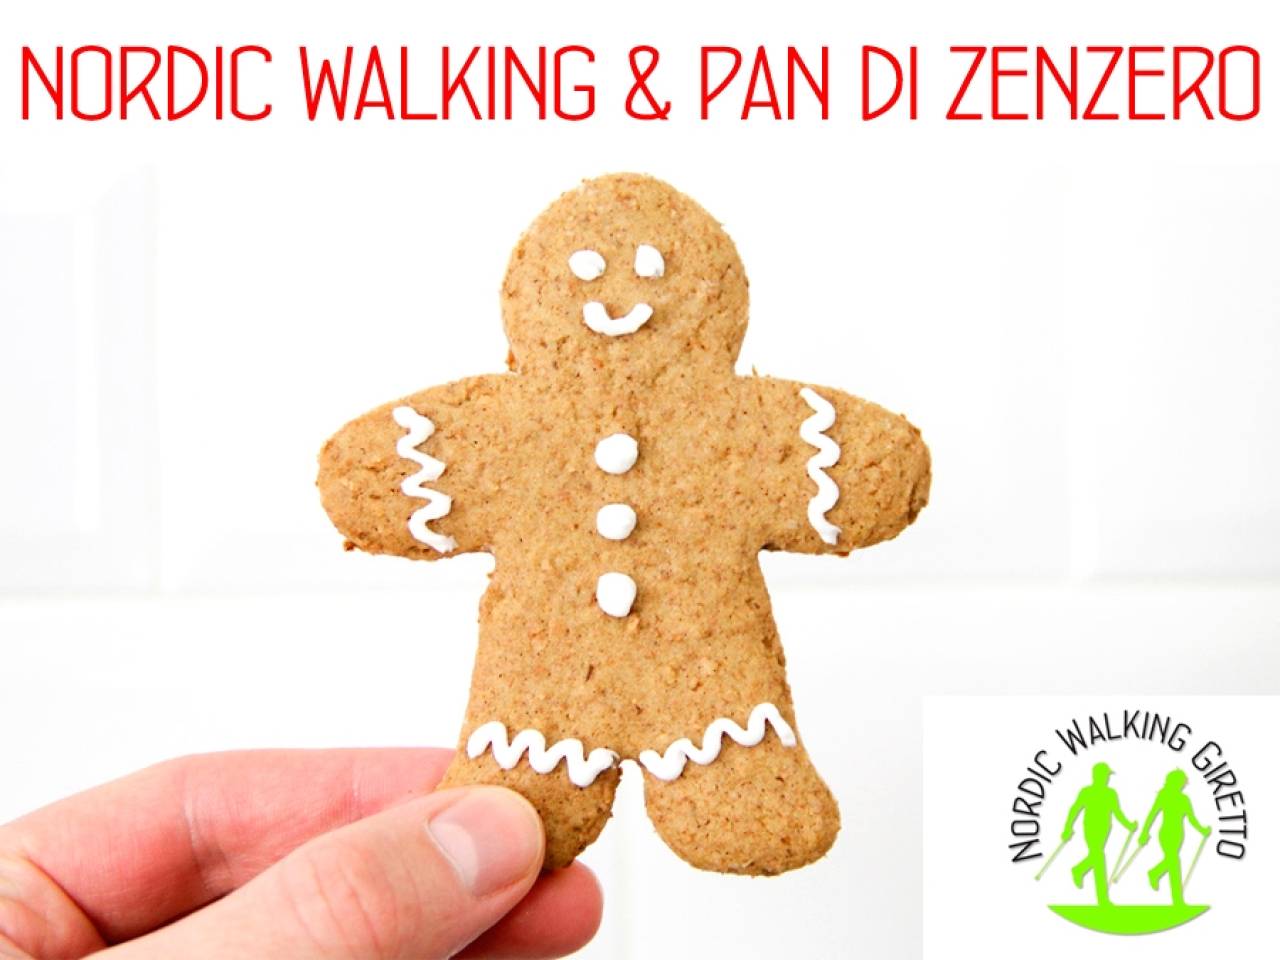 Nordic Walking e Pan di Zenzero - 2015